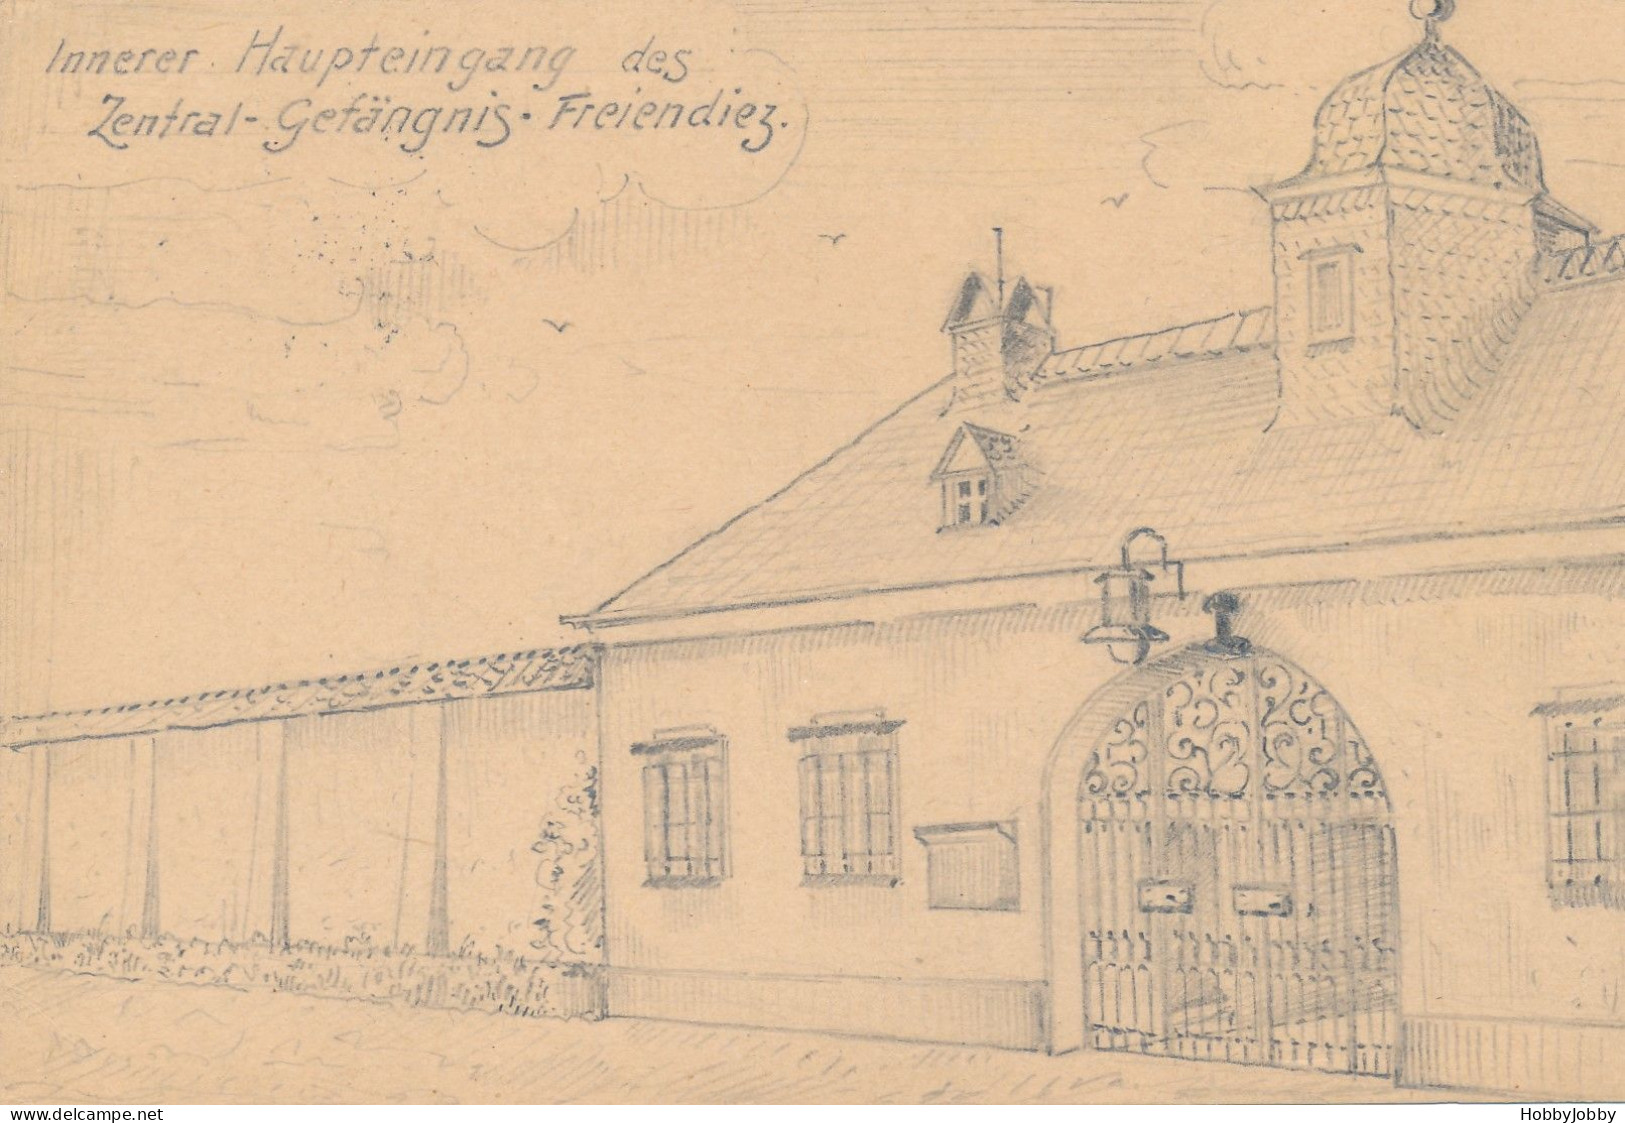 3 stück I WK Handgezeichnet-Bleistift: Nachtwächter-Nassau 1917/PFEIFERAUCHER & Innerer Haupteingang Zentral Gefägnis-Fr